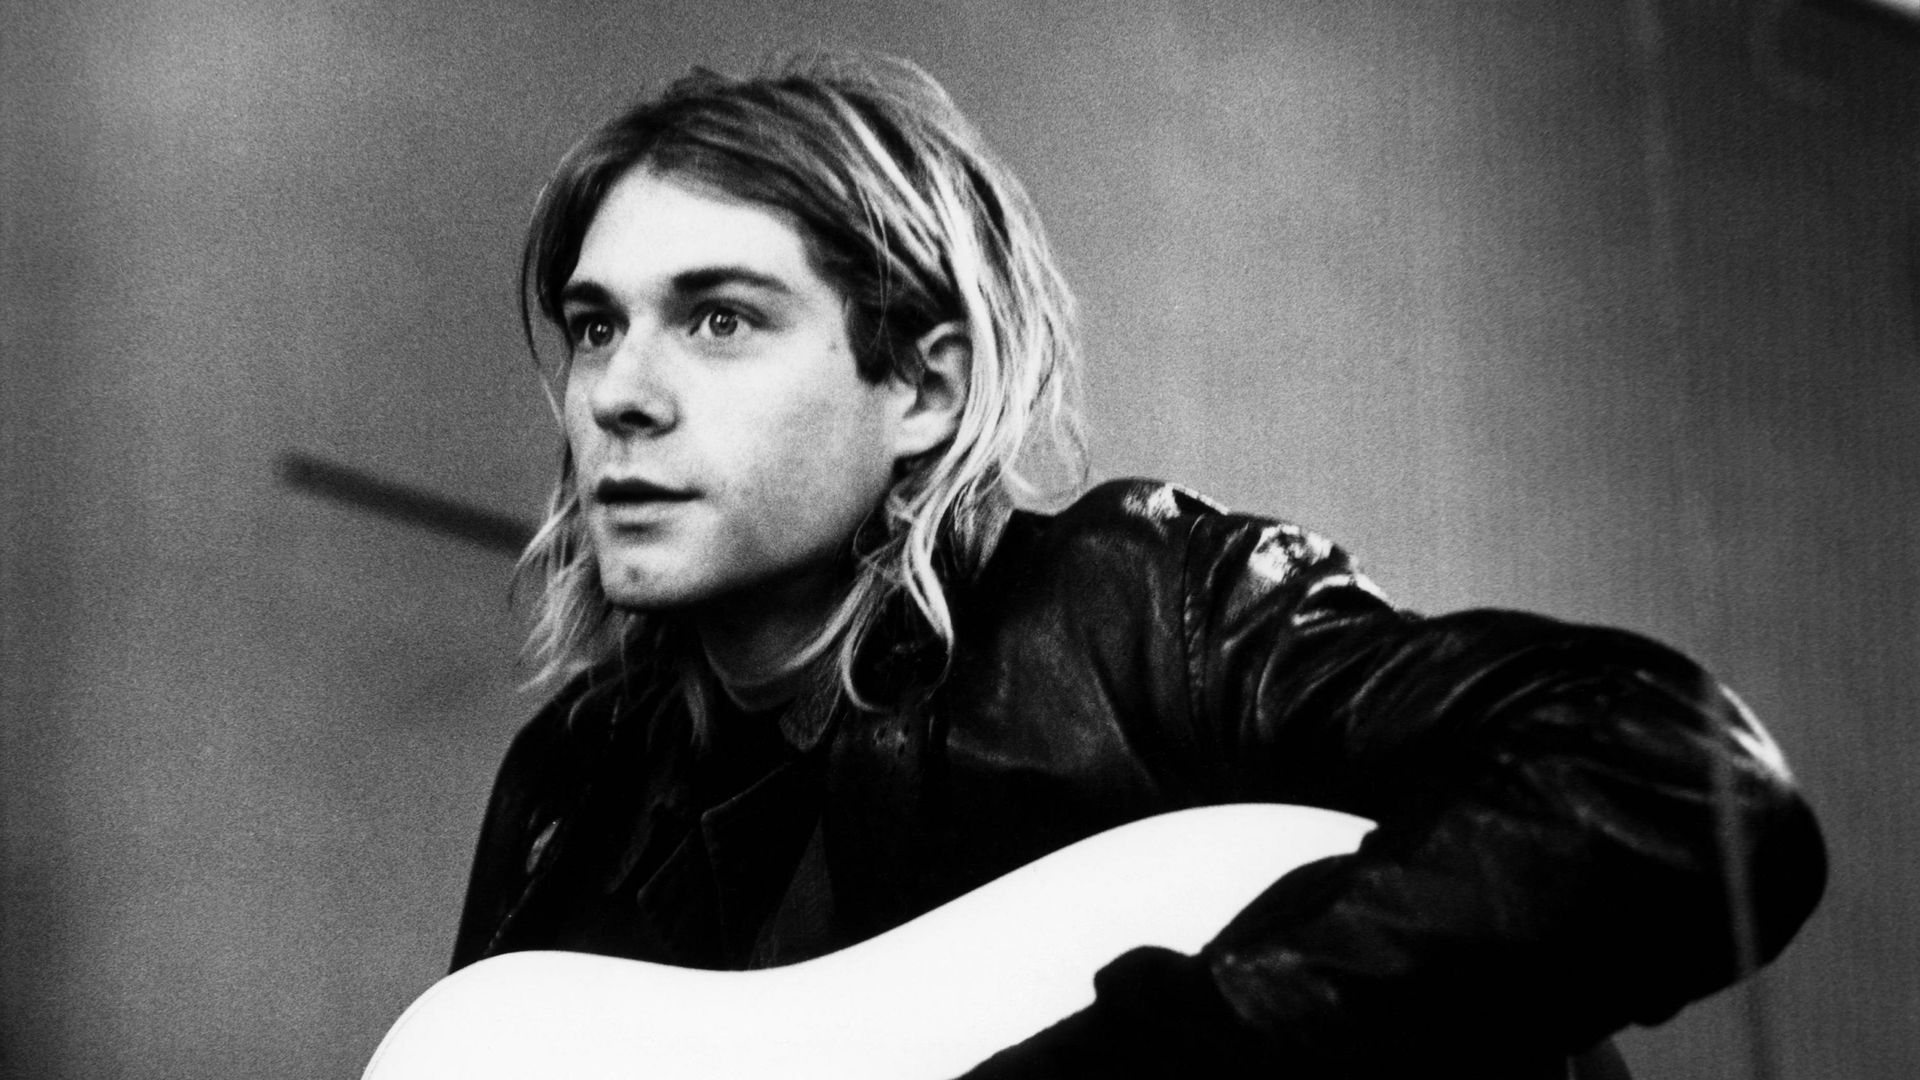 Photo de Kurt Cobain enregistrant une musique dans les studios Hilversum, le 25 novembre 1991.